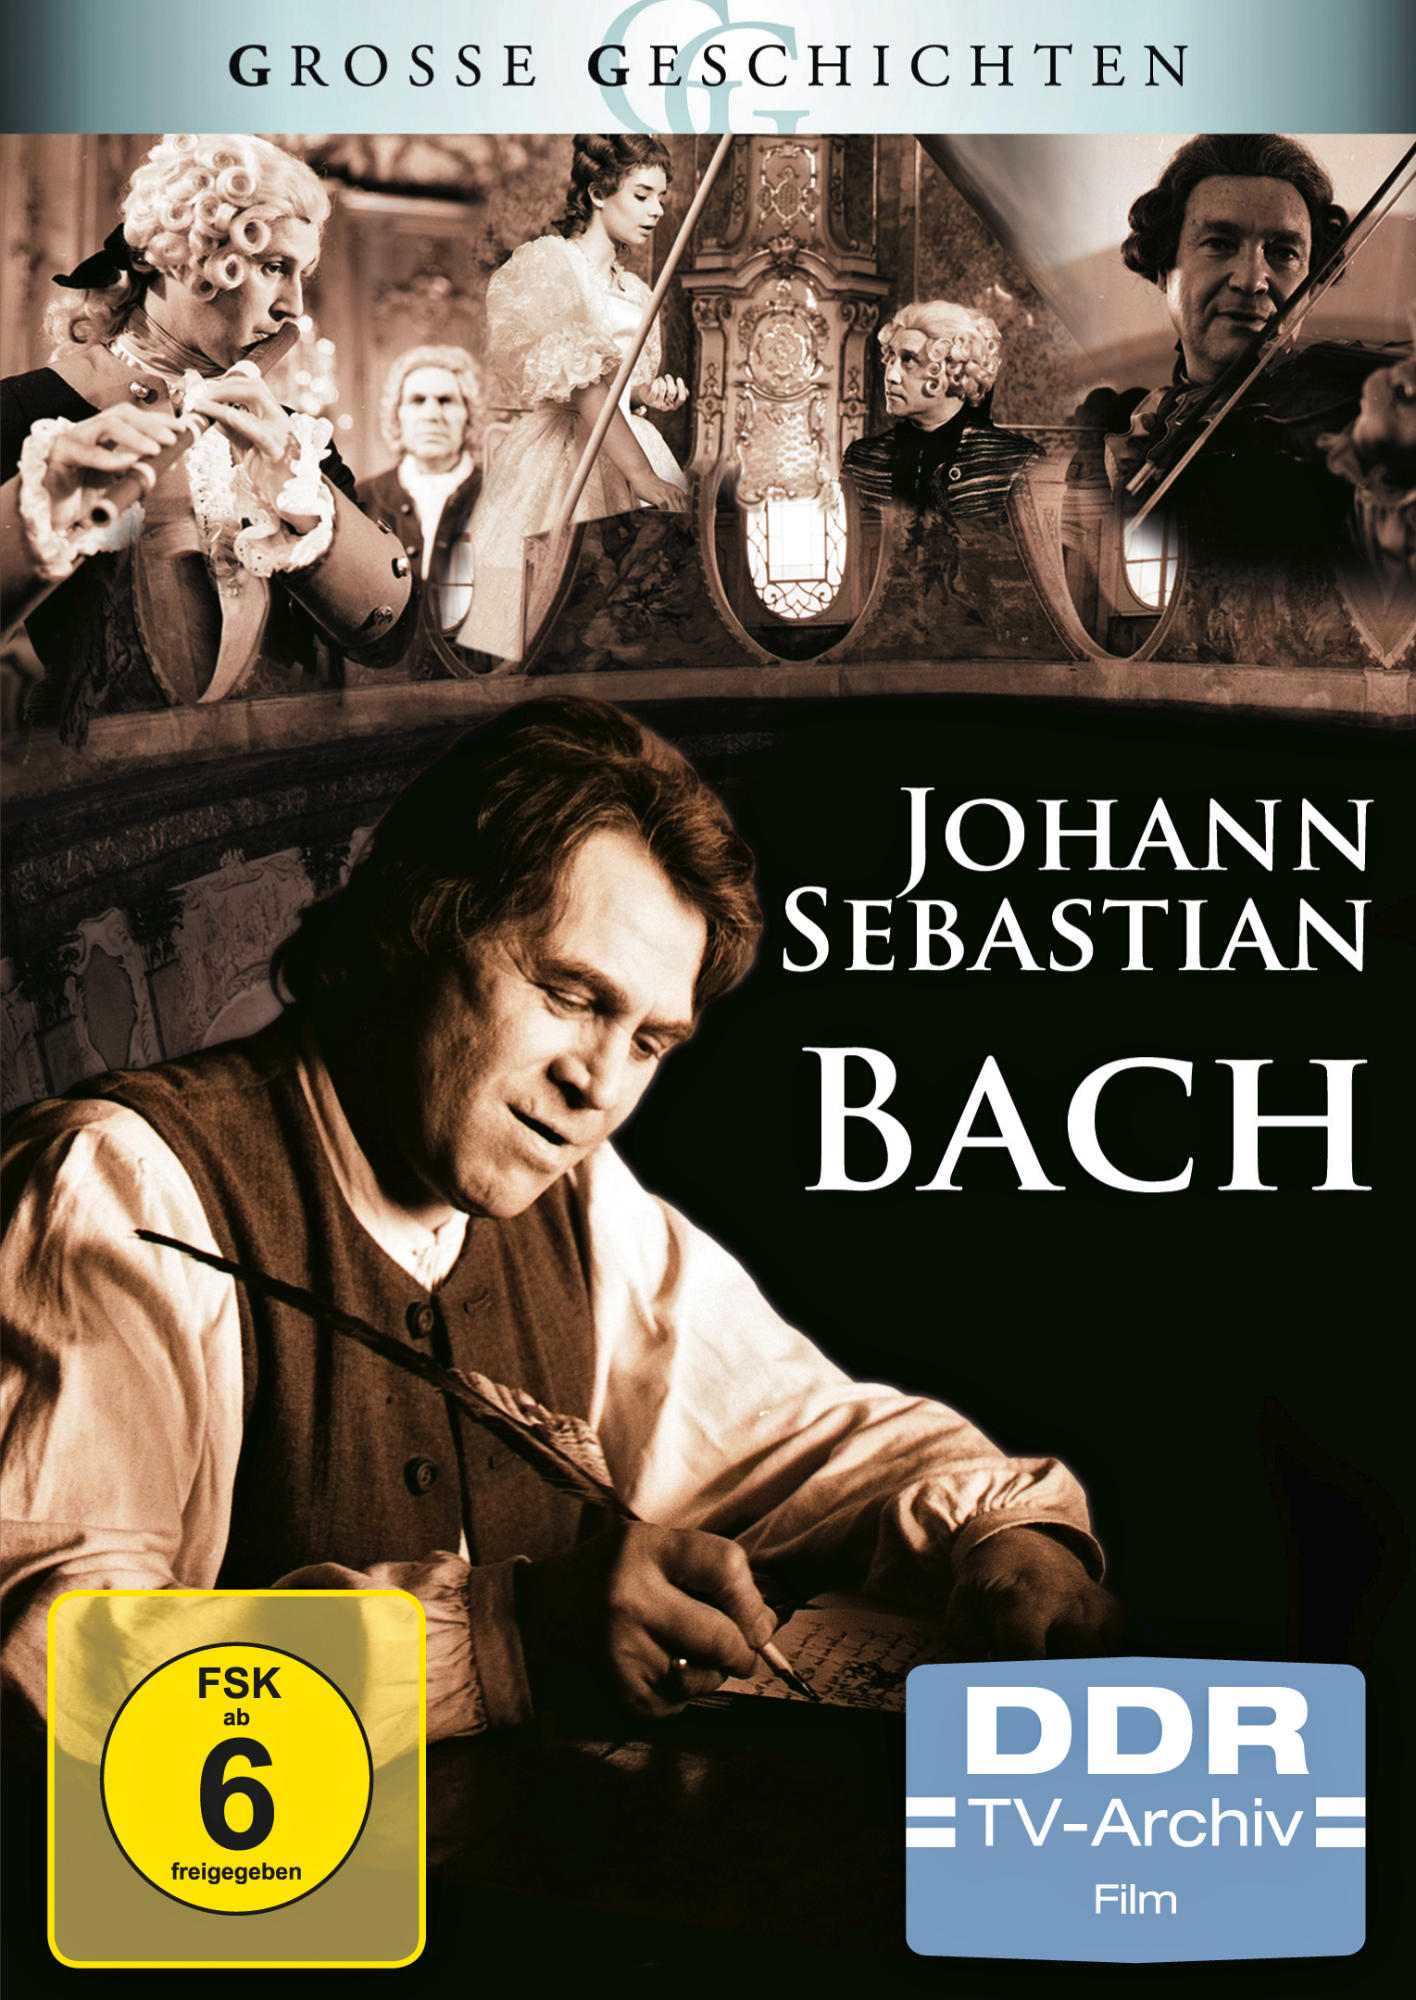 DVD (GROSSE BACH GESCHICHTEN) SEBASTIAN JOHANN